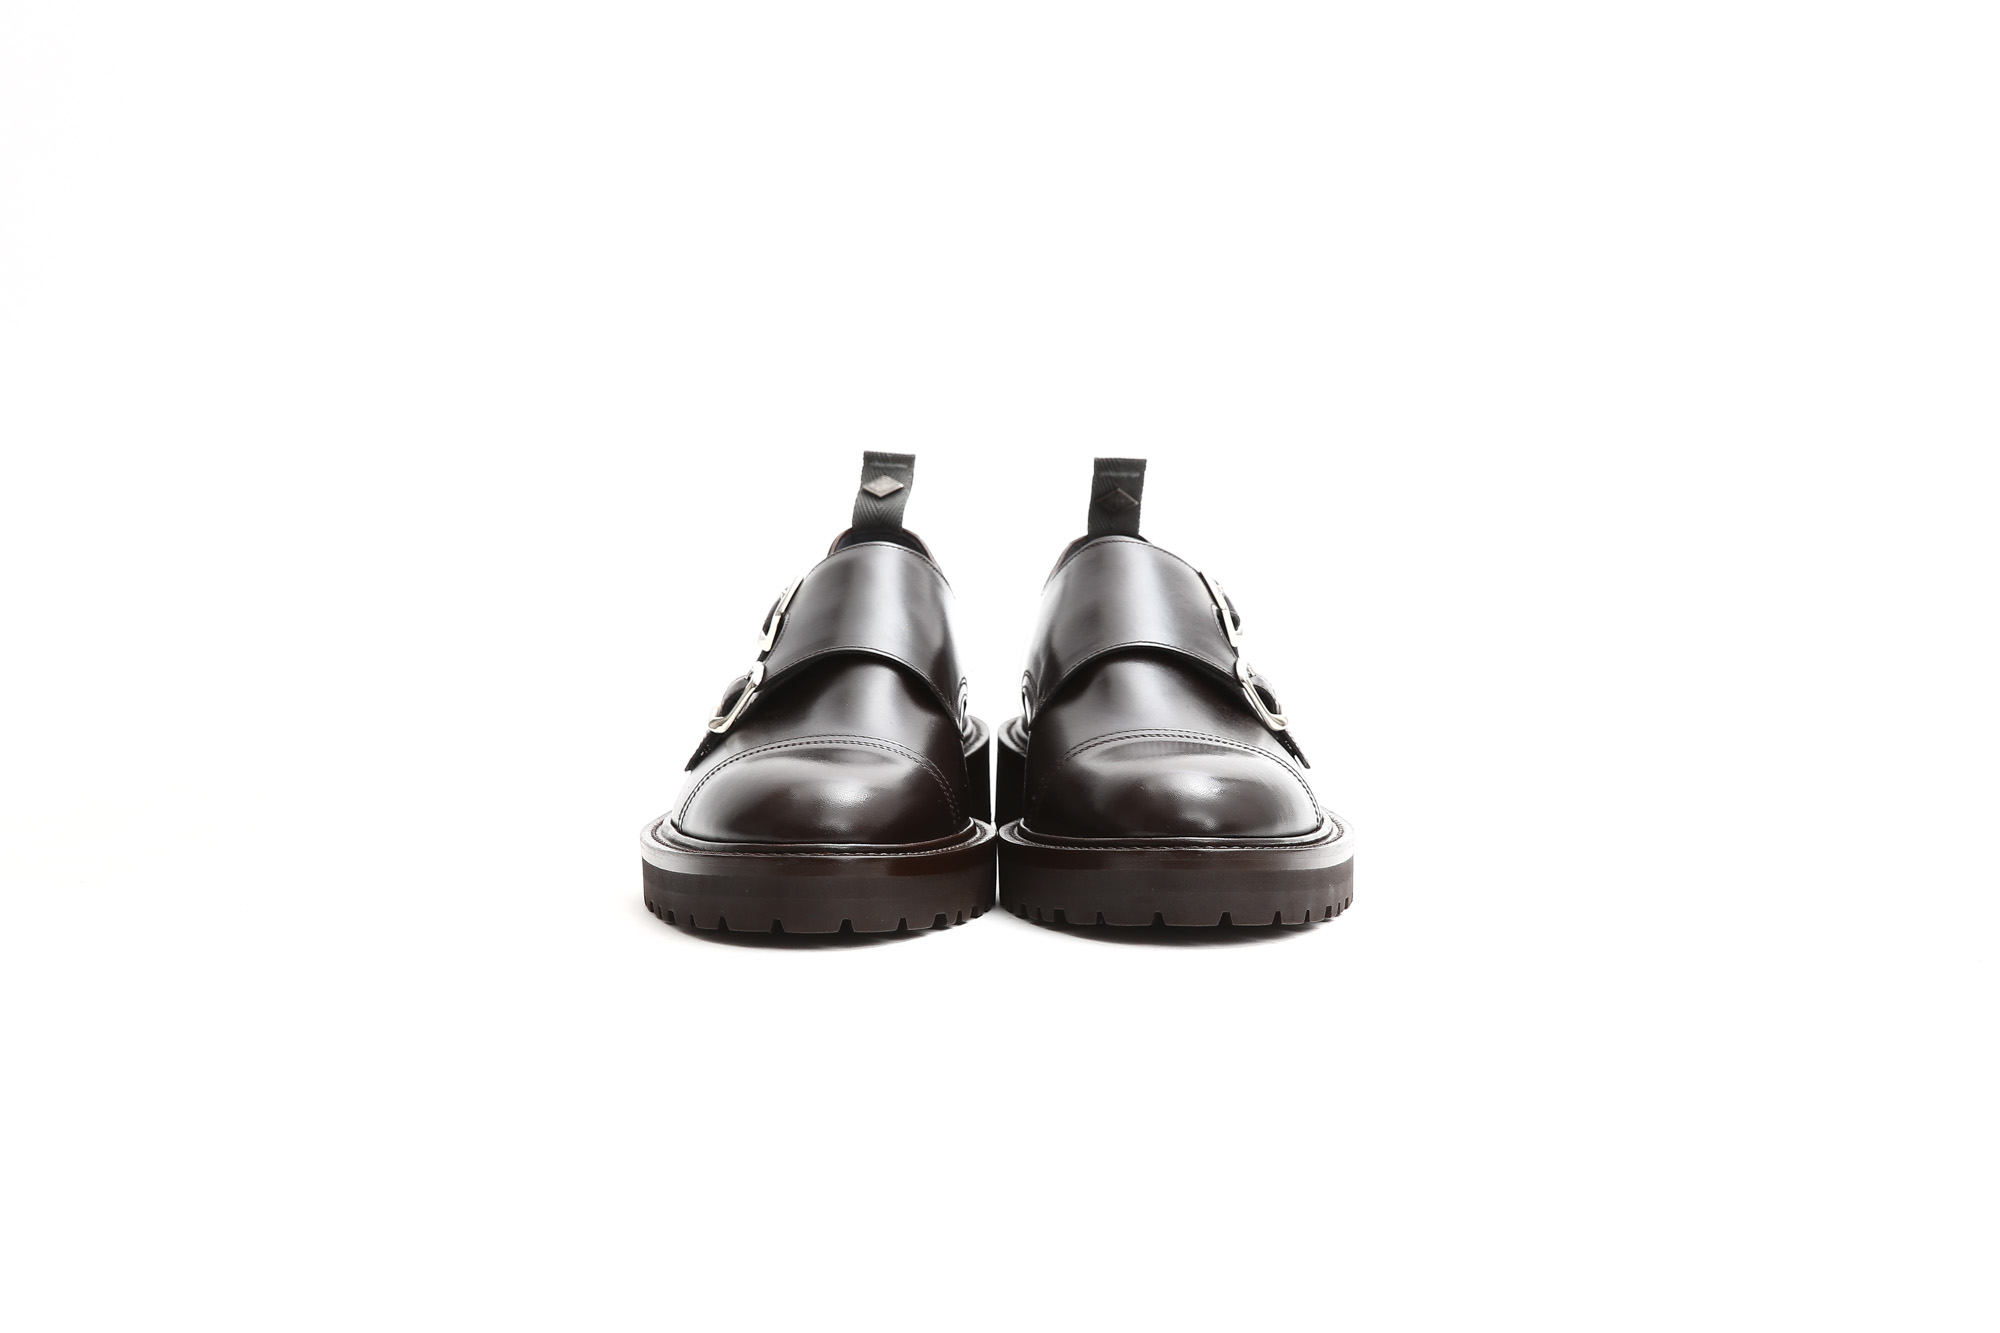 【WH / ダブルエイチ】 【WH-0300(WHS-0300)】 Double Monk Strap Shoes (干場氏 スペシャル モデル) Cruise Last (クルーズラスト) ダブルモンクストラップシューズ DARK BROWN (ダークブラウン) MADE IN JAPAN (日本製) 2018 春夏新作   【干場氏、坪内氏の直筆サイン入り】【Alto e Diritto限定 スペシャルアイテム】 wh 干場さん 干場スペシャル FORZASTYLE フォルザスタイル 愛知 名古屋 Alto e Diritto アルト エ デリット